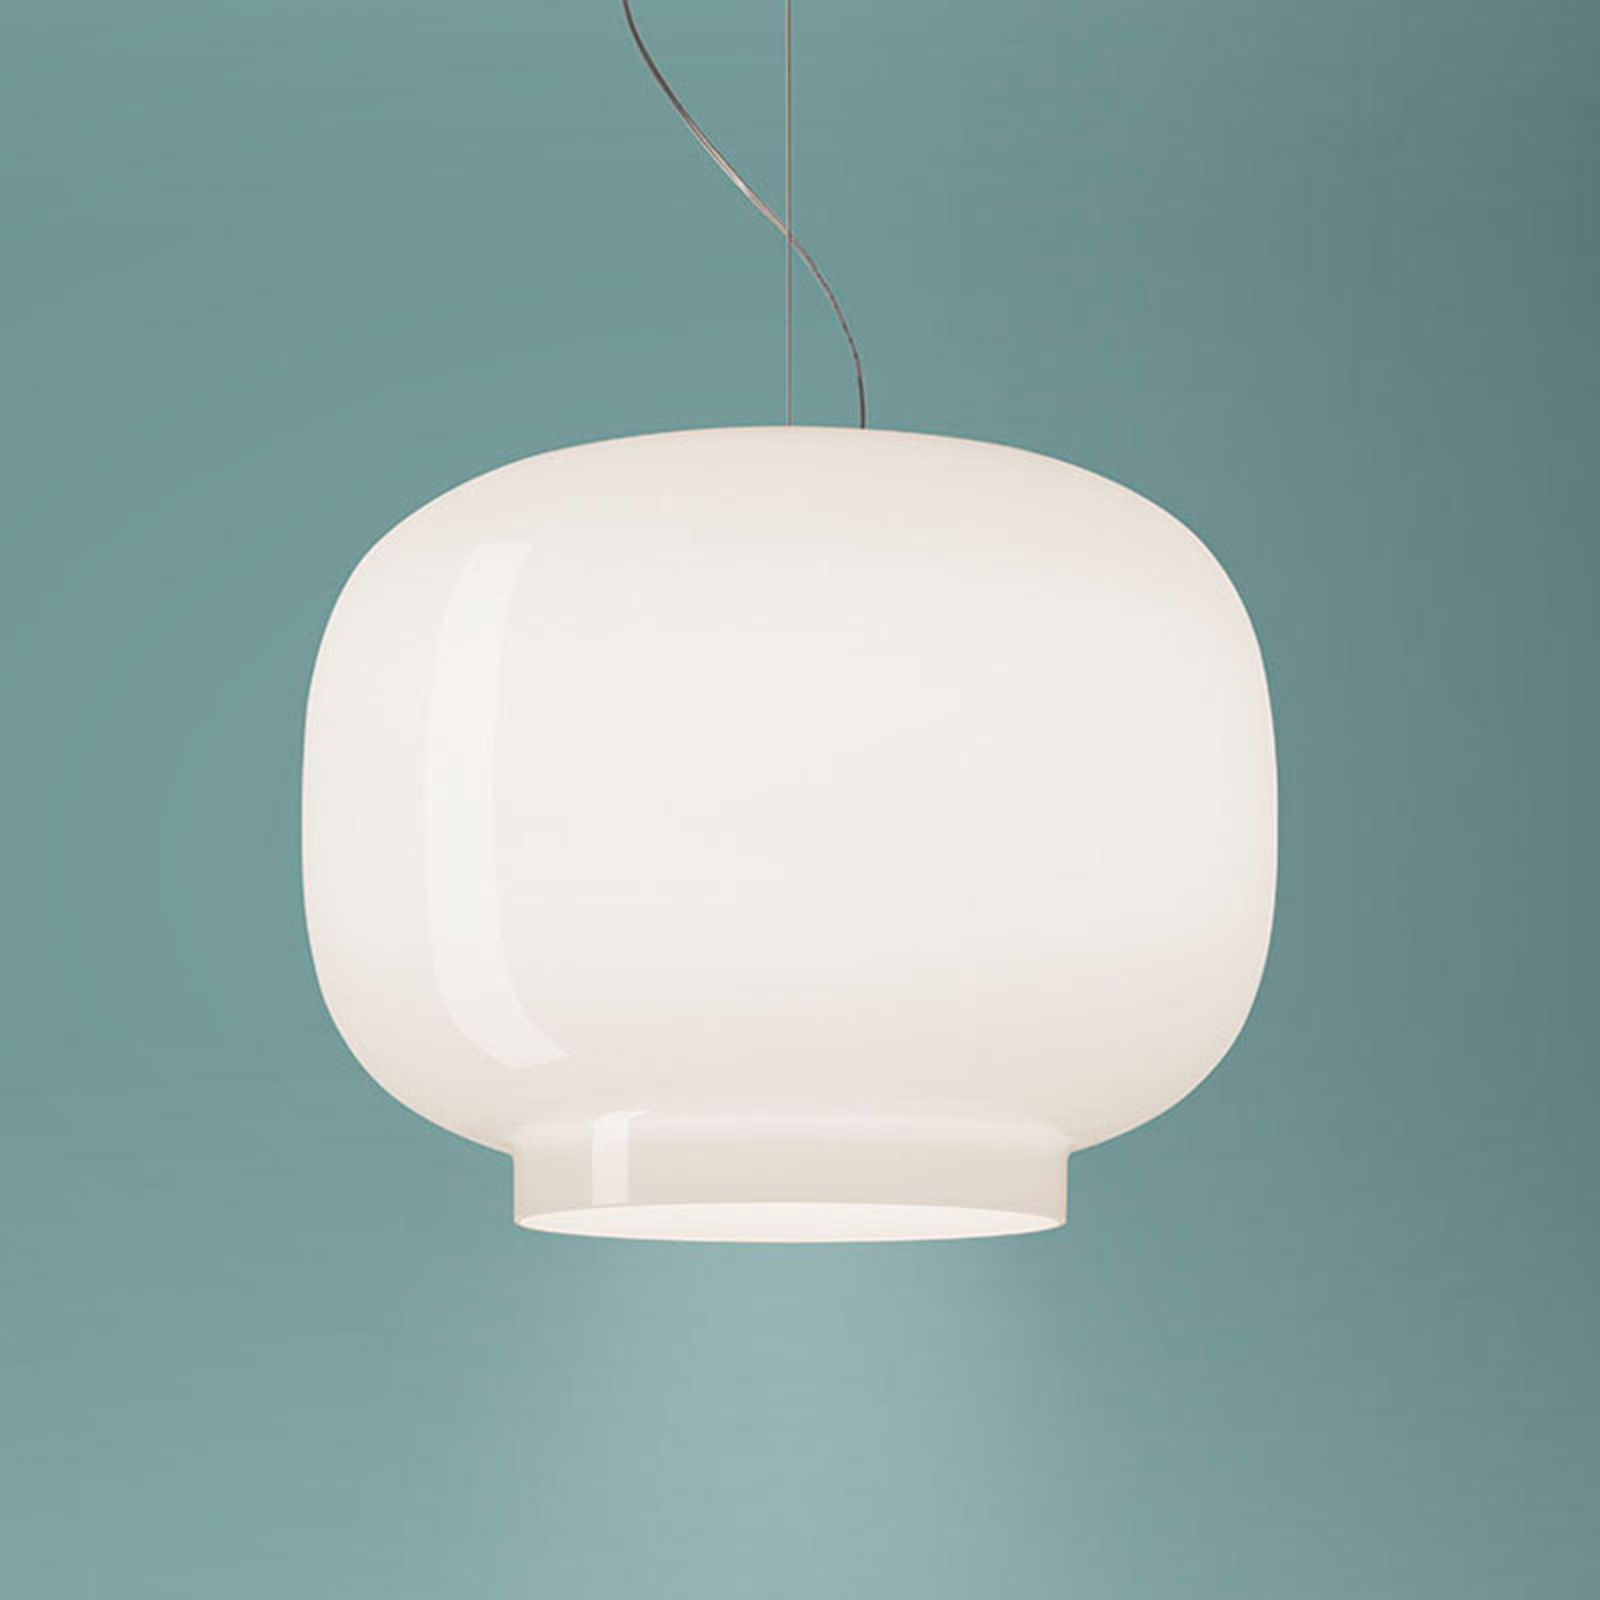 Foscarini Chouchin Bianco 1 hanglamp E27 LED